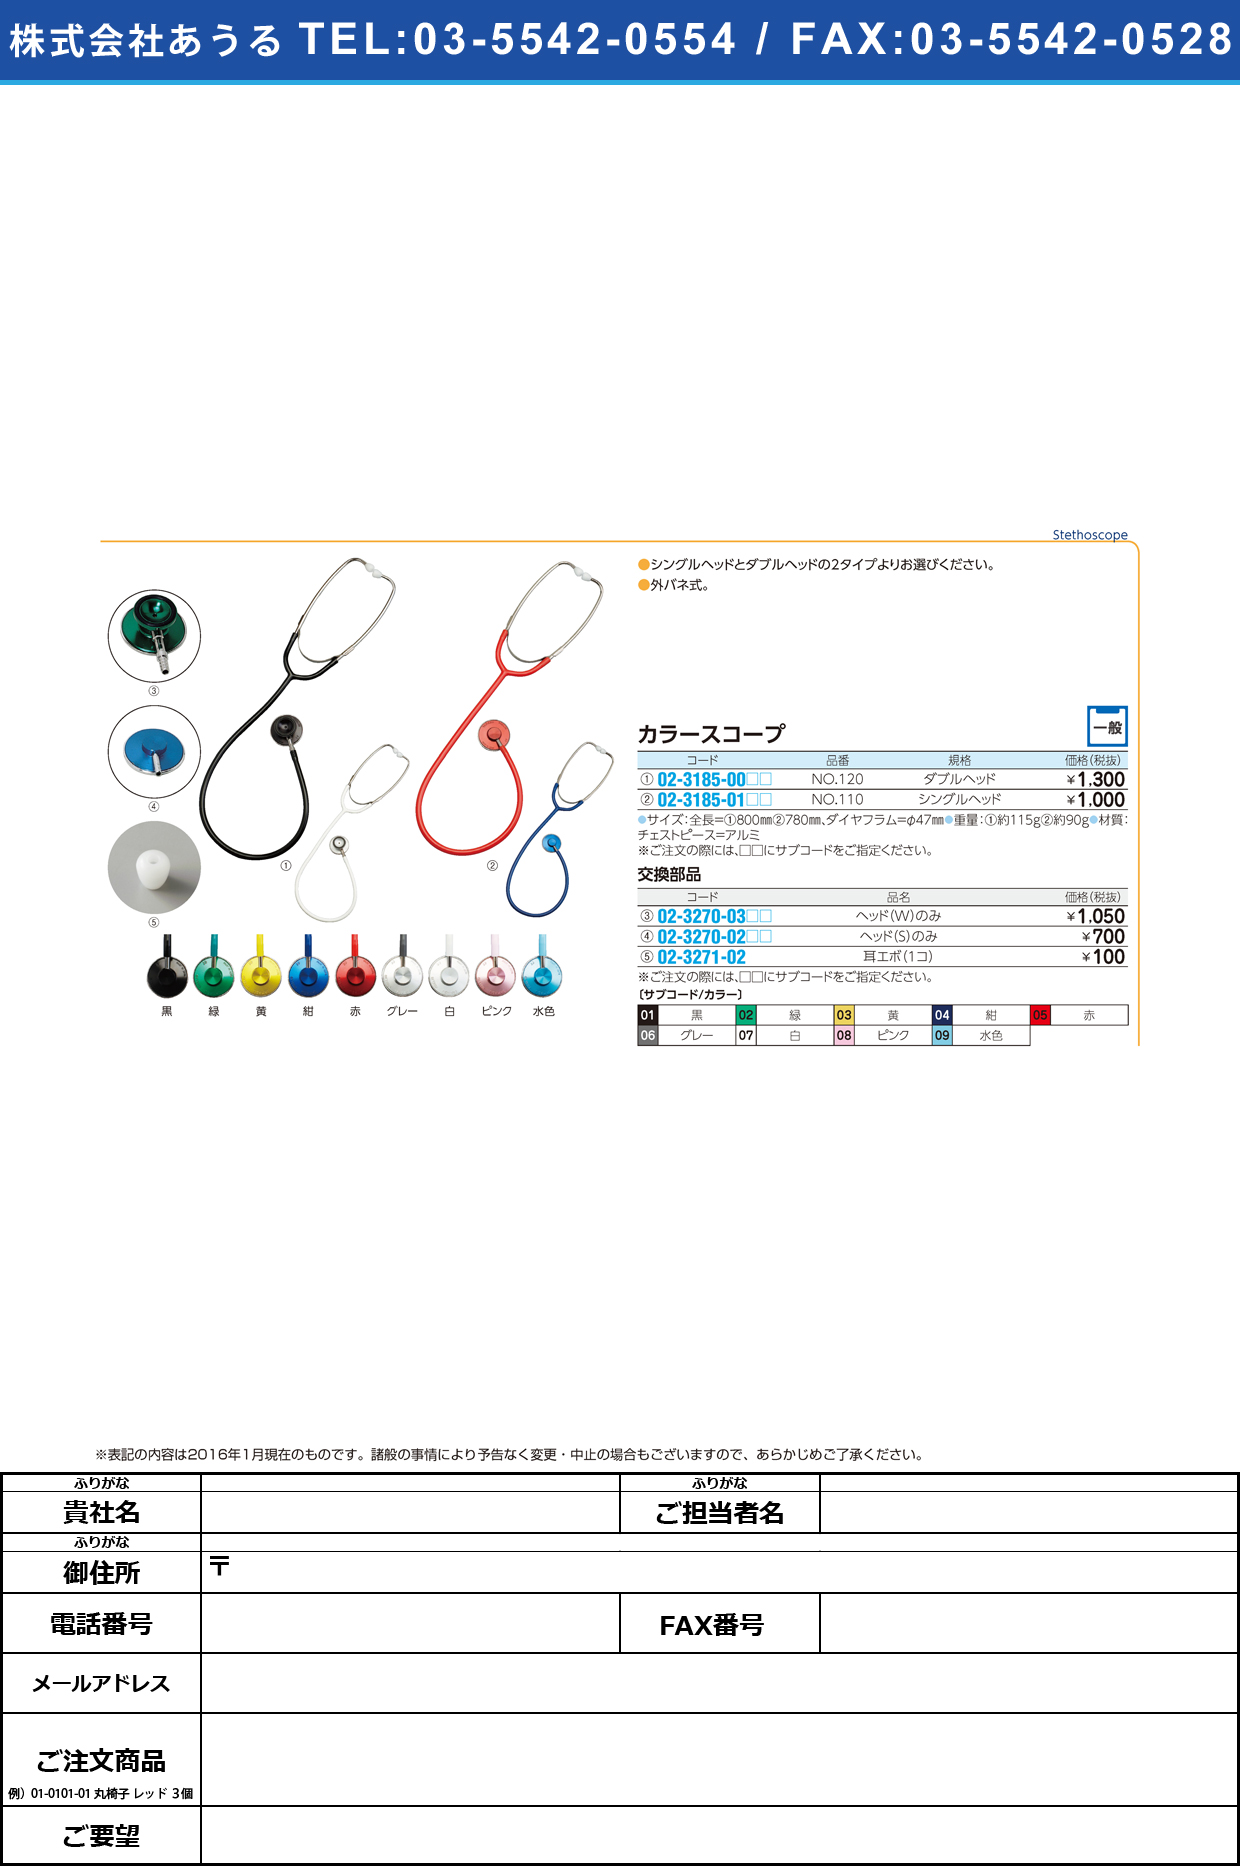 (02-3270-02)聴診器用ヘッド（カラースコープＳ用） ﾁｮｳｼﾝｷﾖｳﾍｯﾄﾞ ｼﾝｸﾞﾙﾍｯﾄﾞ【1個単位】【2016年カタログ商品】